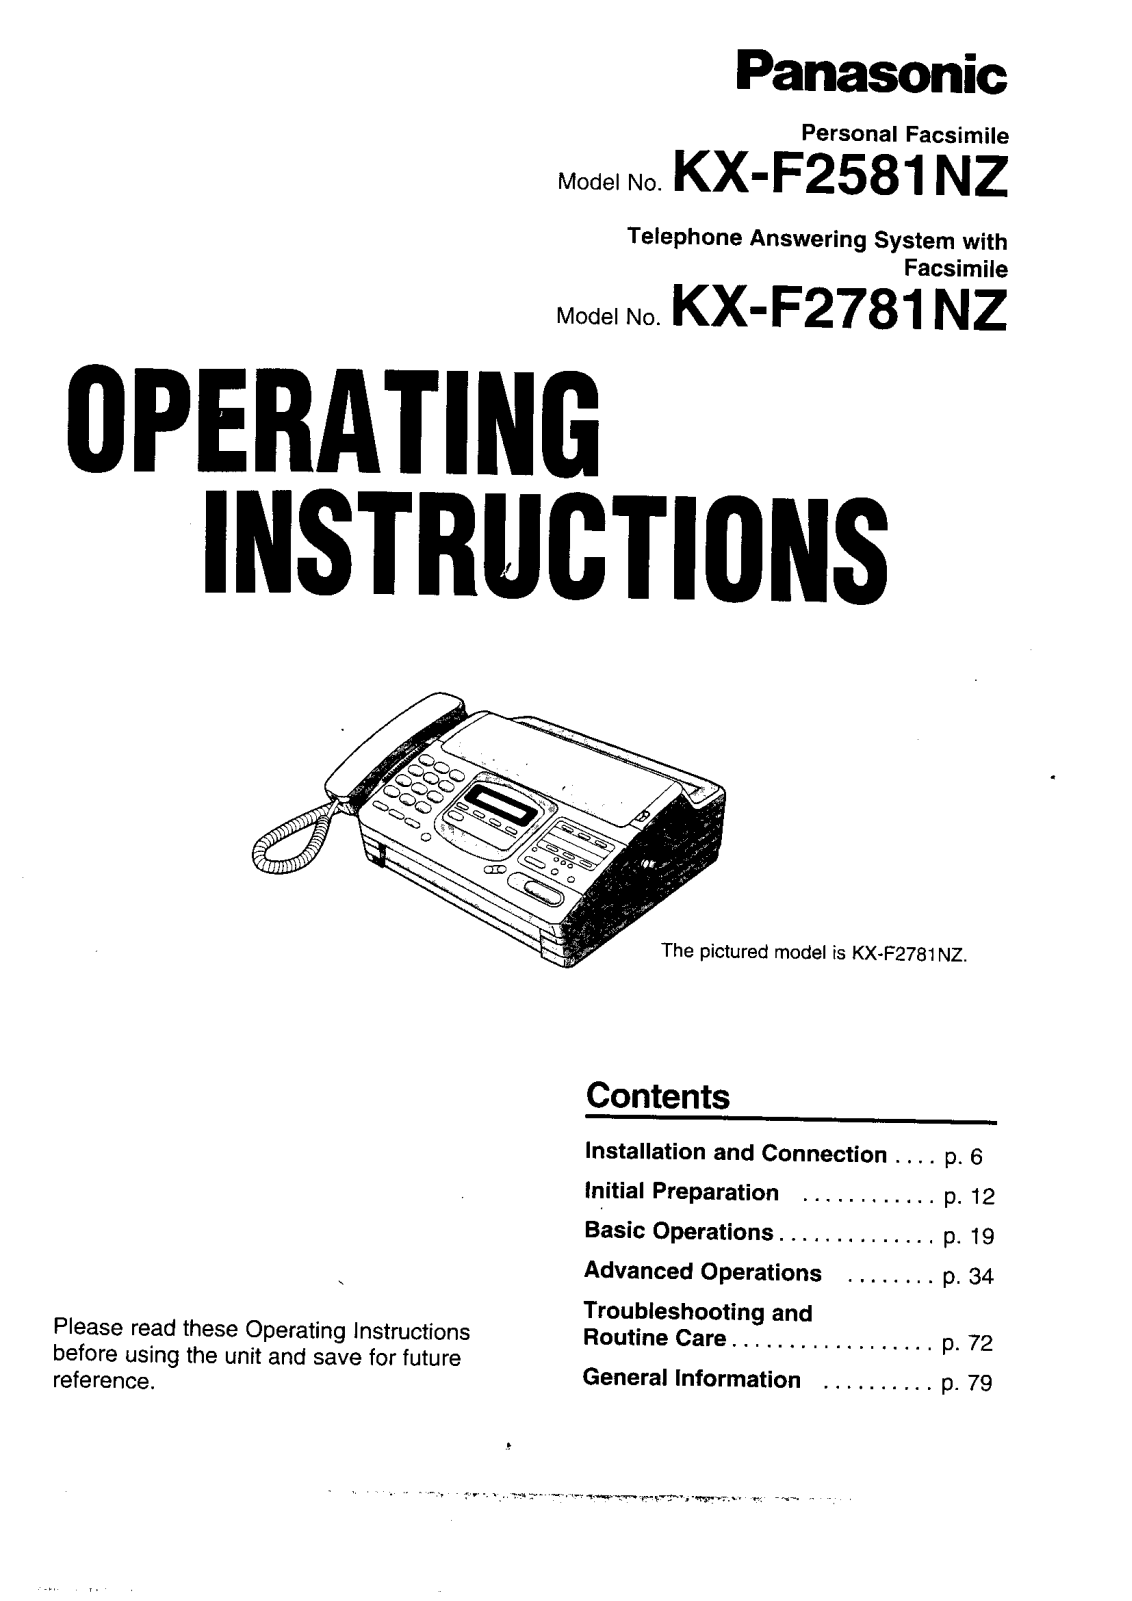 Panasonic KX-F2581NZ User Manual